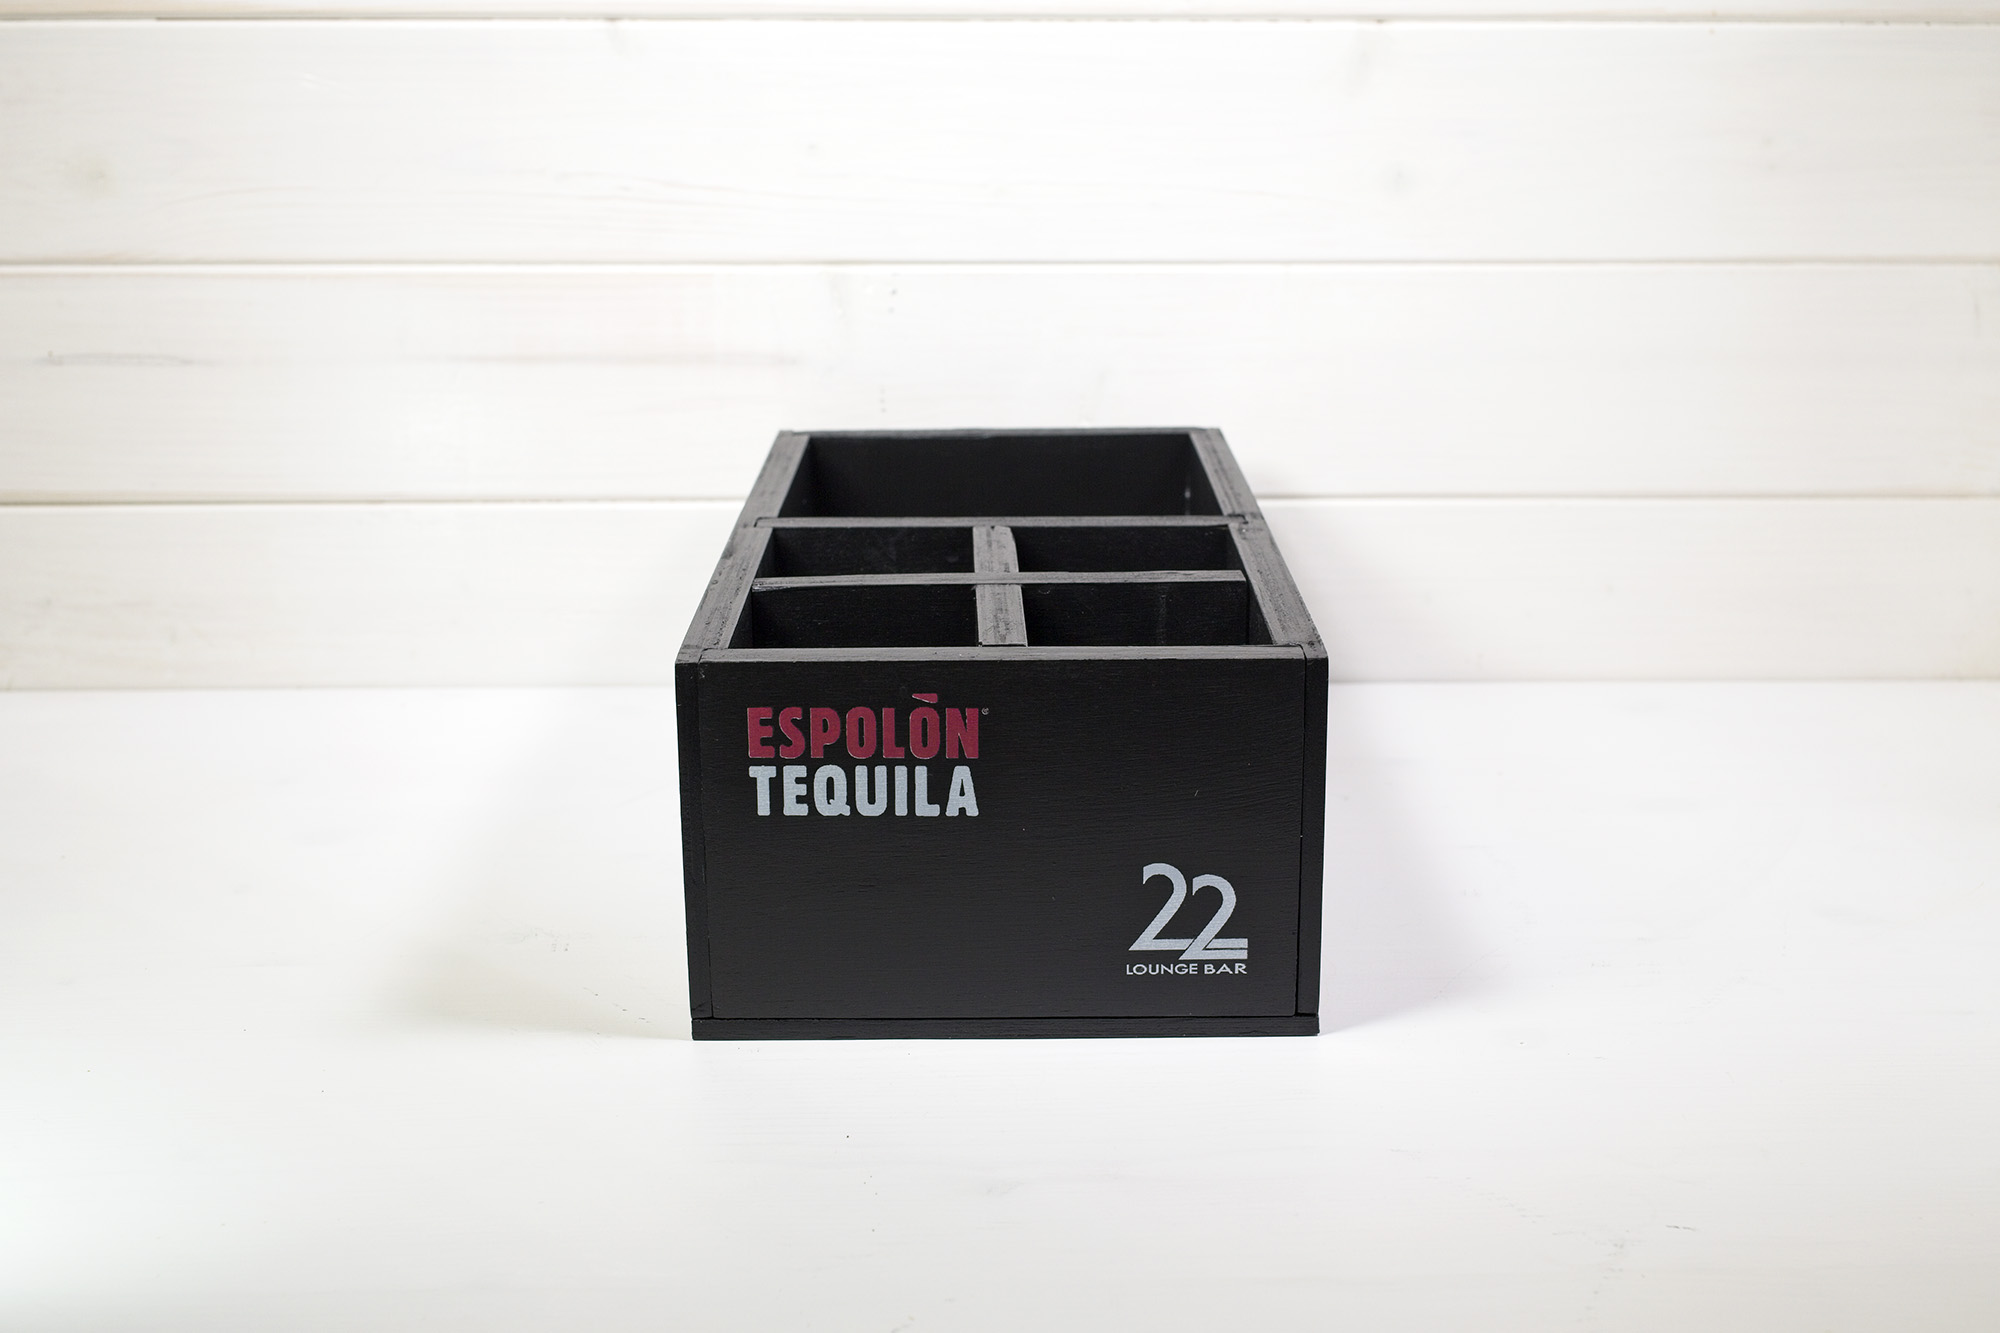 Cassetta Tequila Espolon 22 Lounge Bar